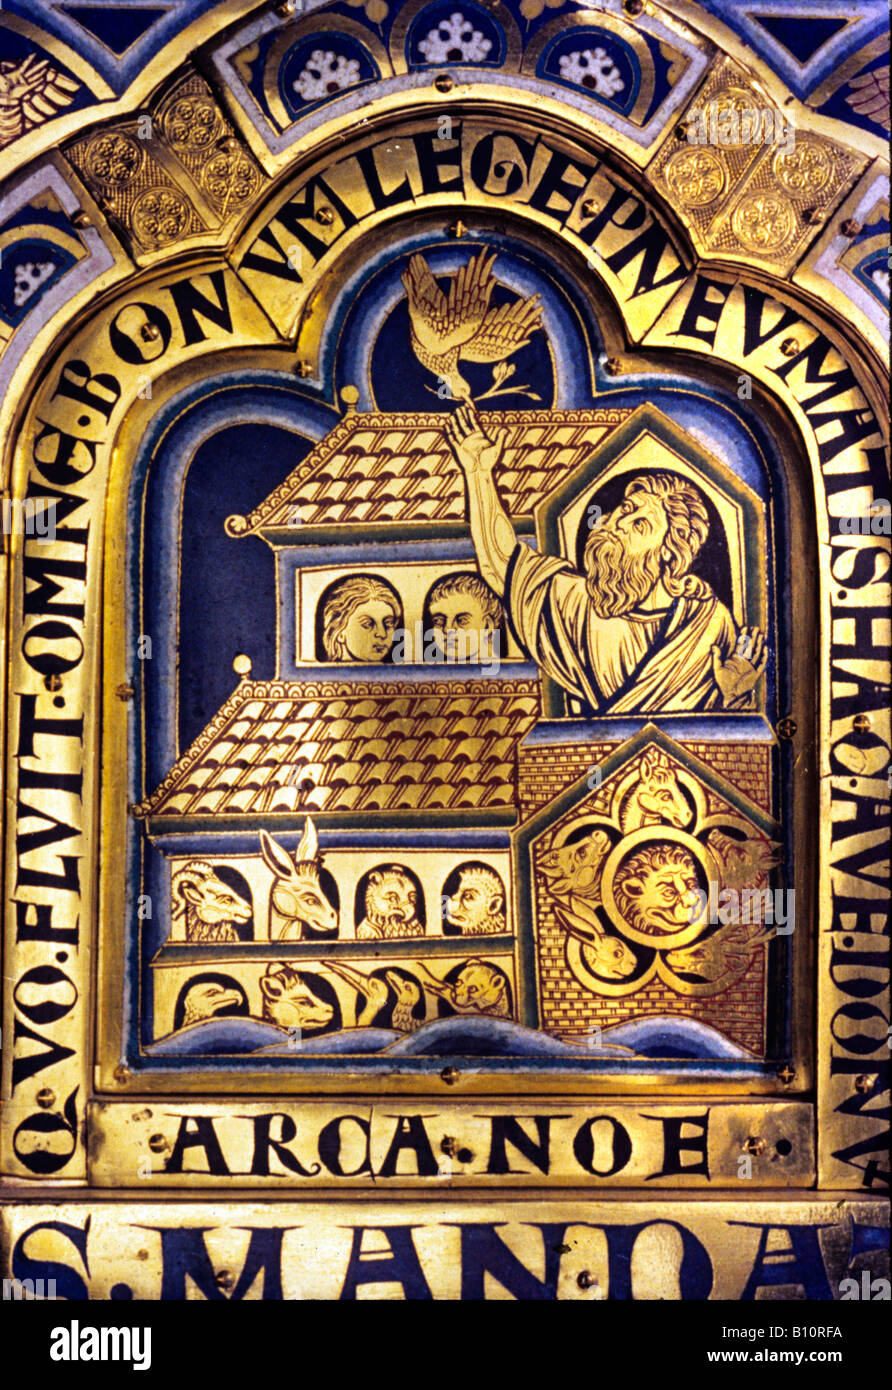 Klosterneuburg Convento. La Verduner altar. Siglo 12. El arca de Noé. Paloma devuelve. Austria Foto de stock